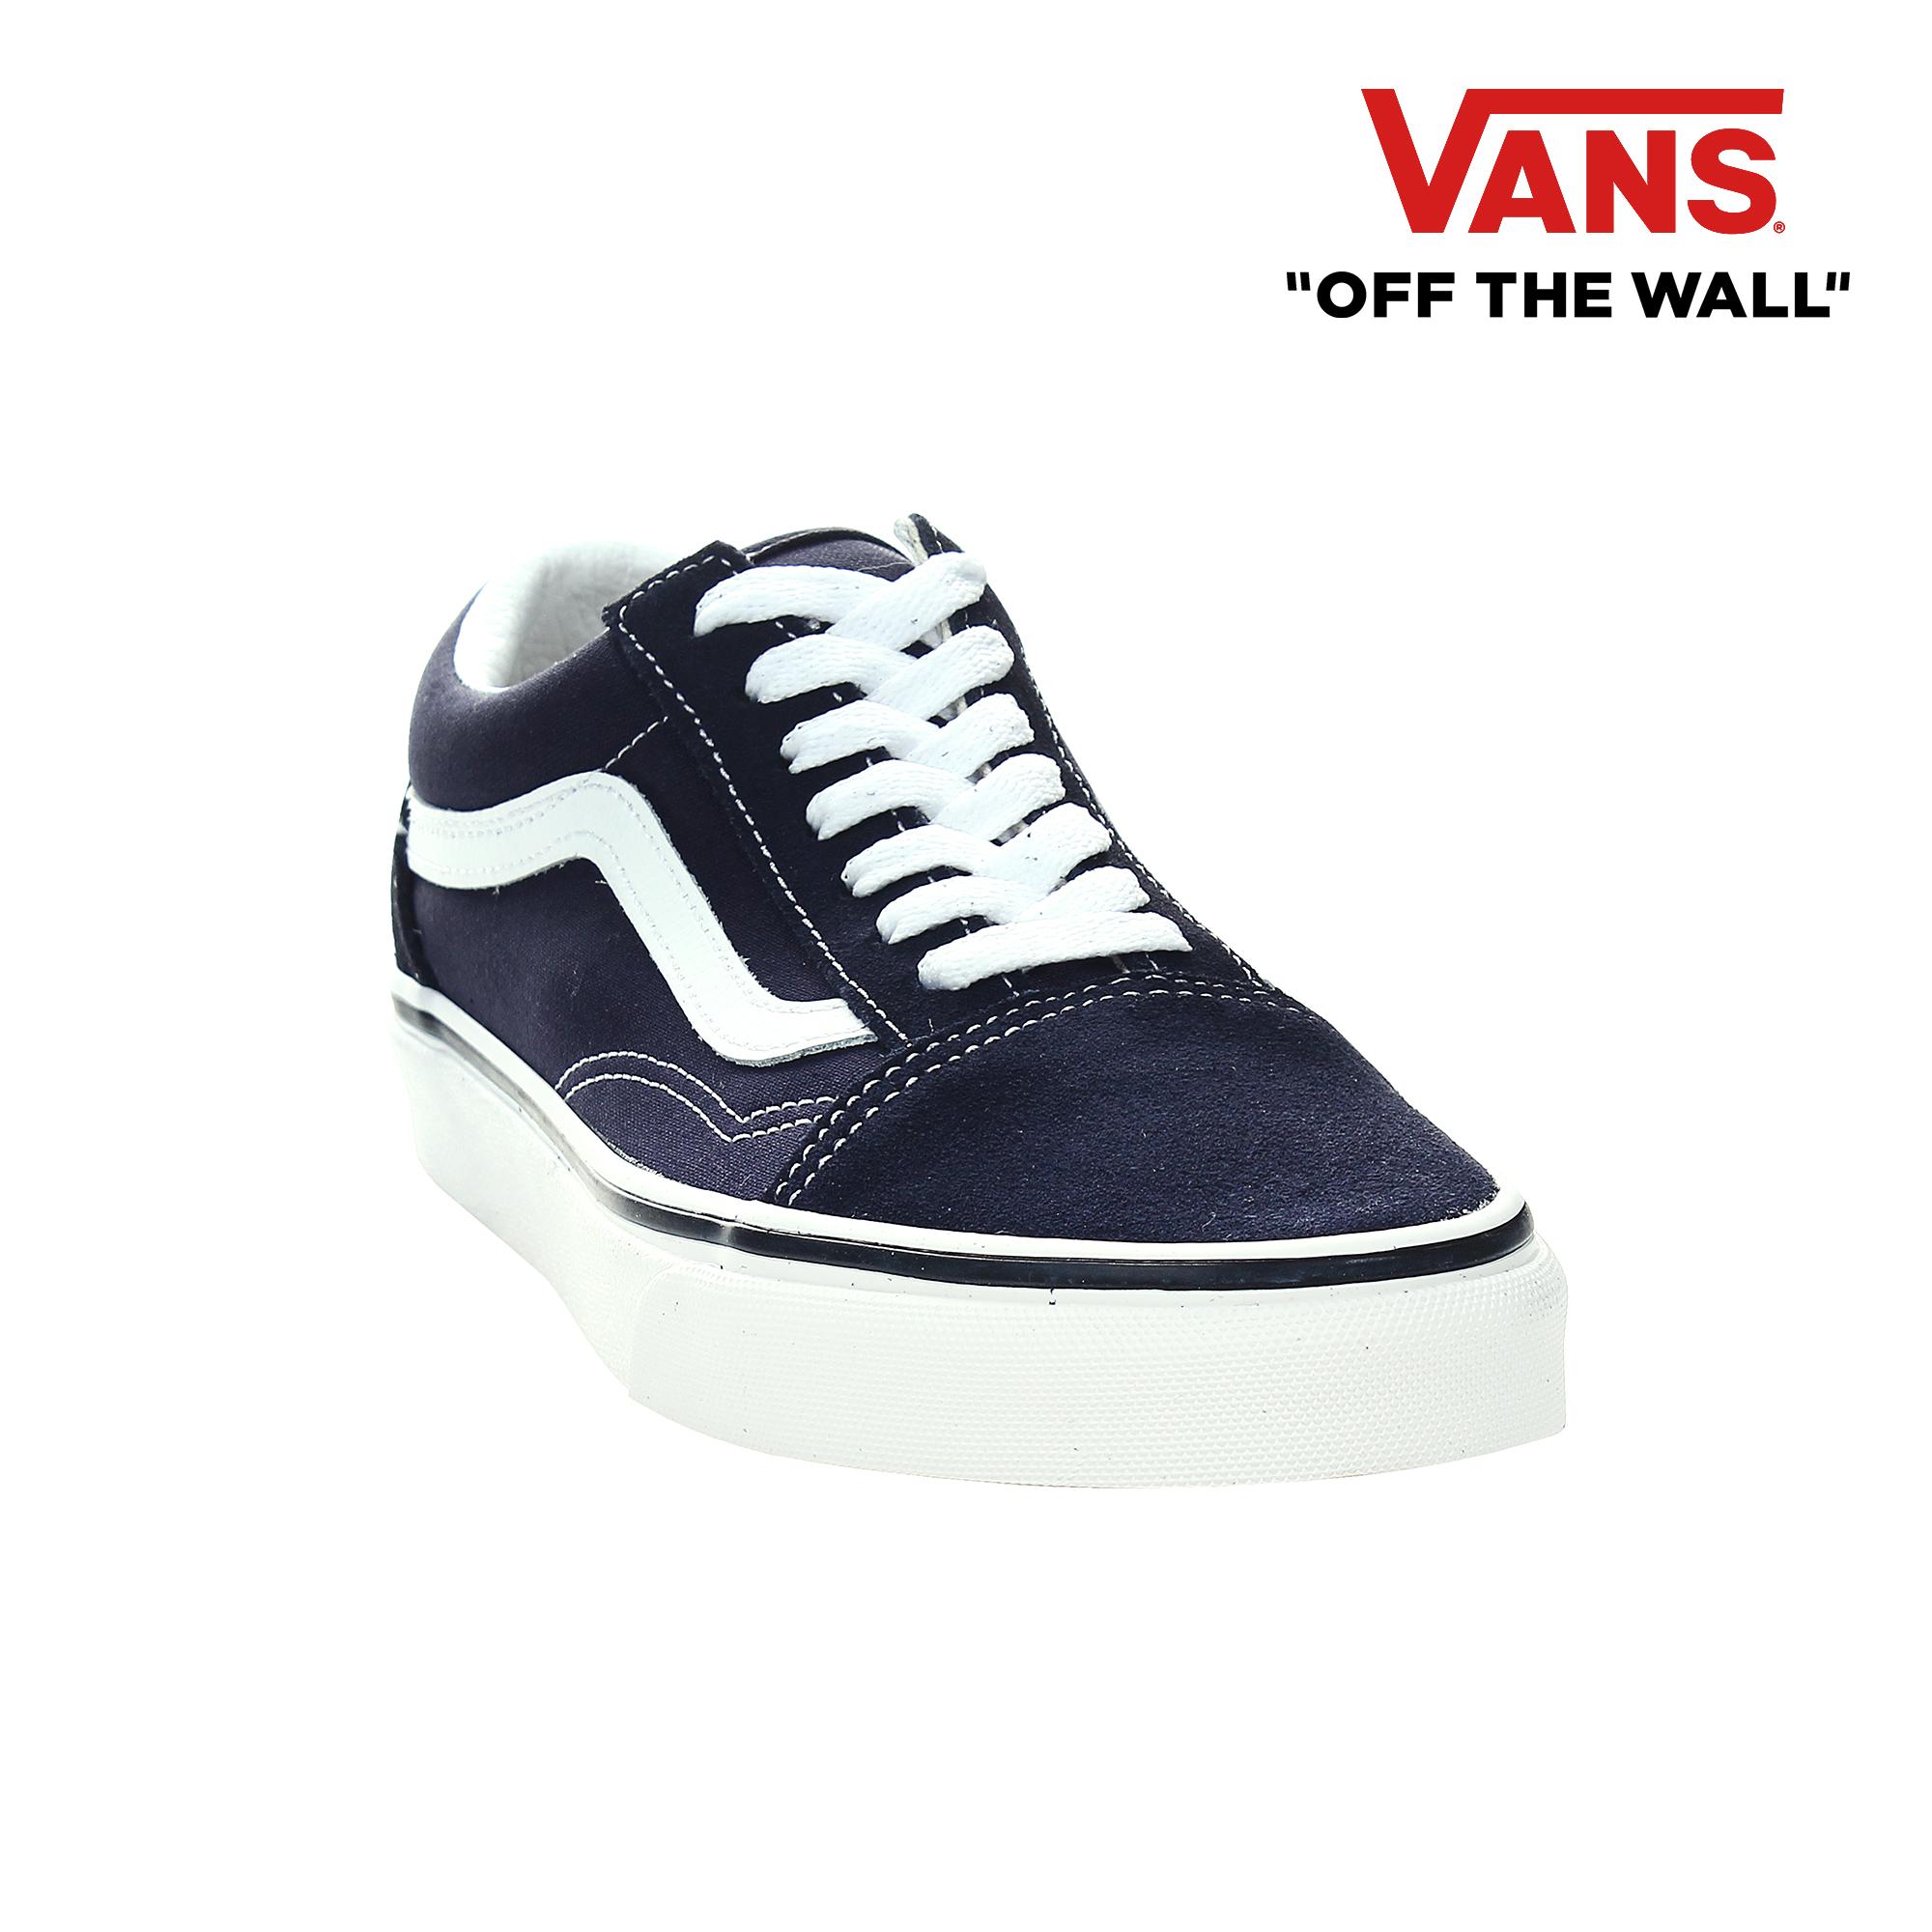 Buy Vans Sneakers Online | lazada.com.ph